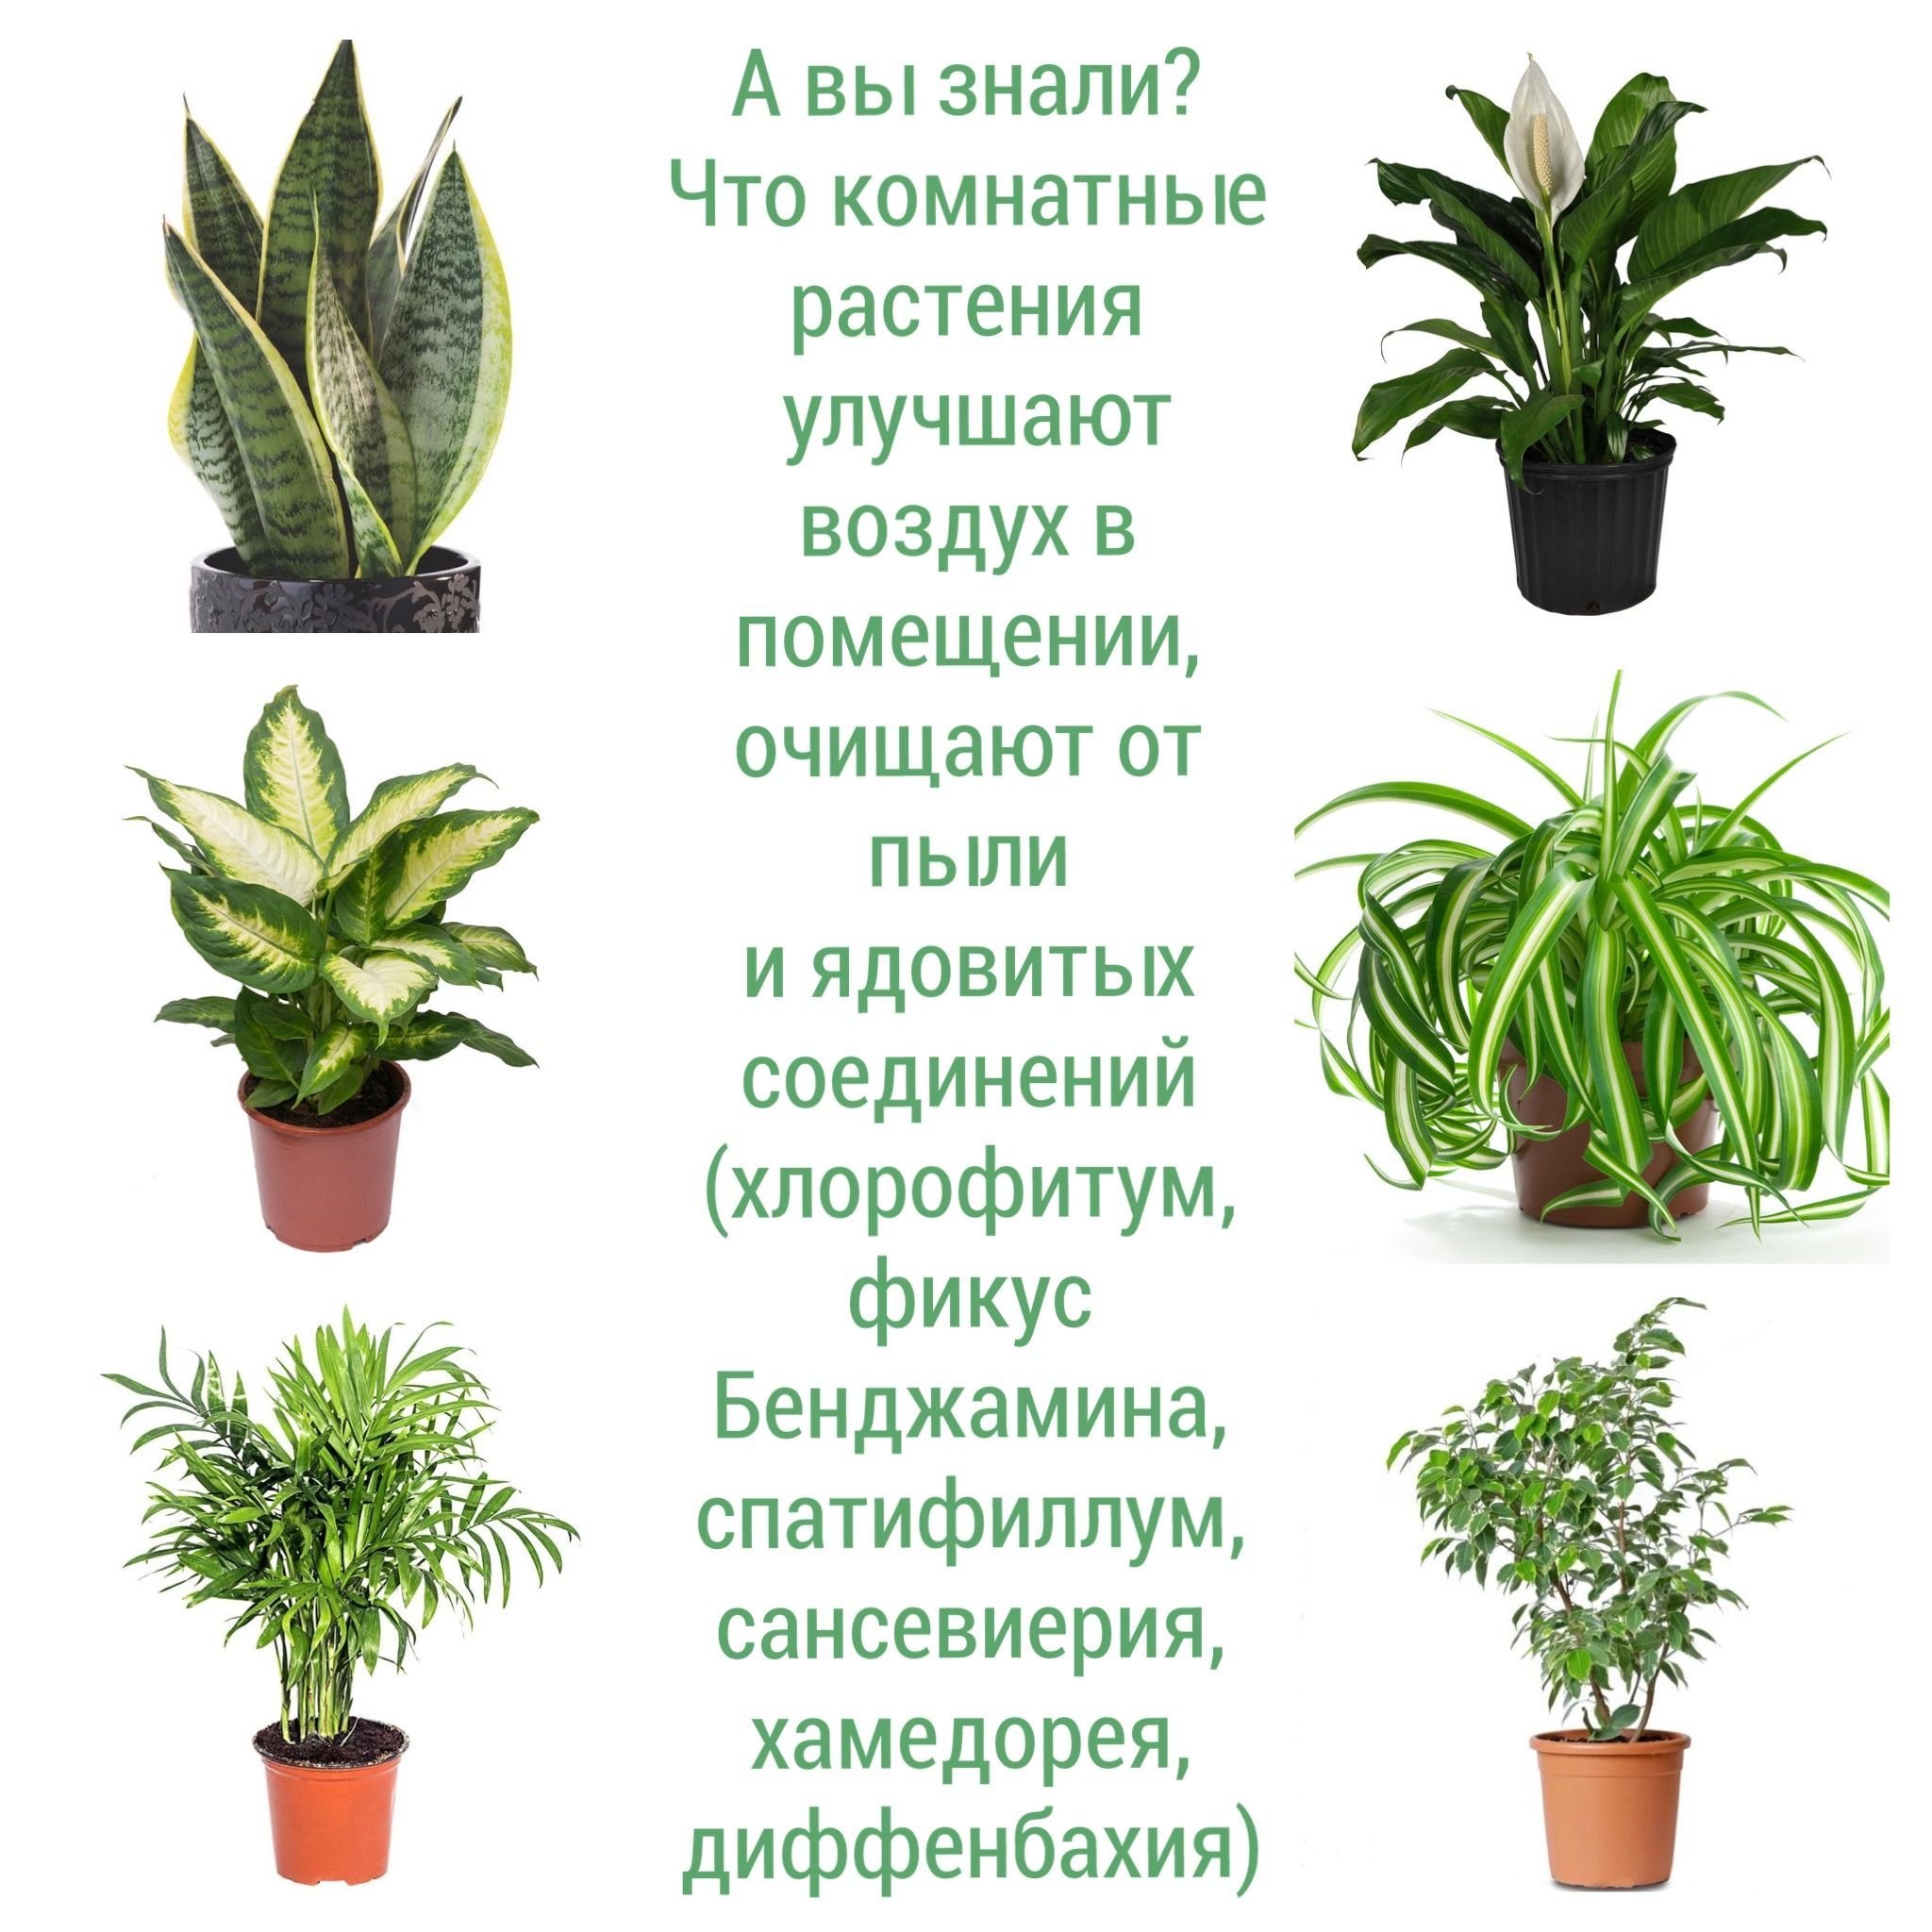 Комнатные растения на г. Комнатные растения фикус хлорофитум. Ядовитые комнатные растения. Ядовитые растения домашние комнатные.